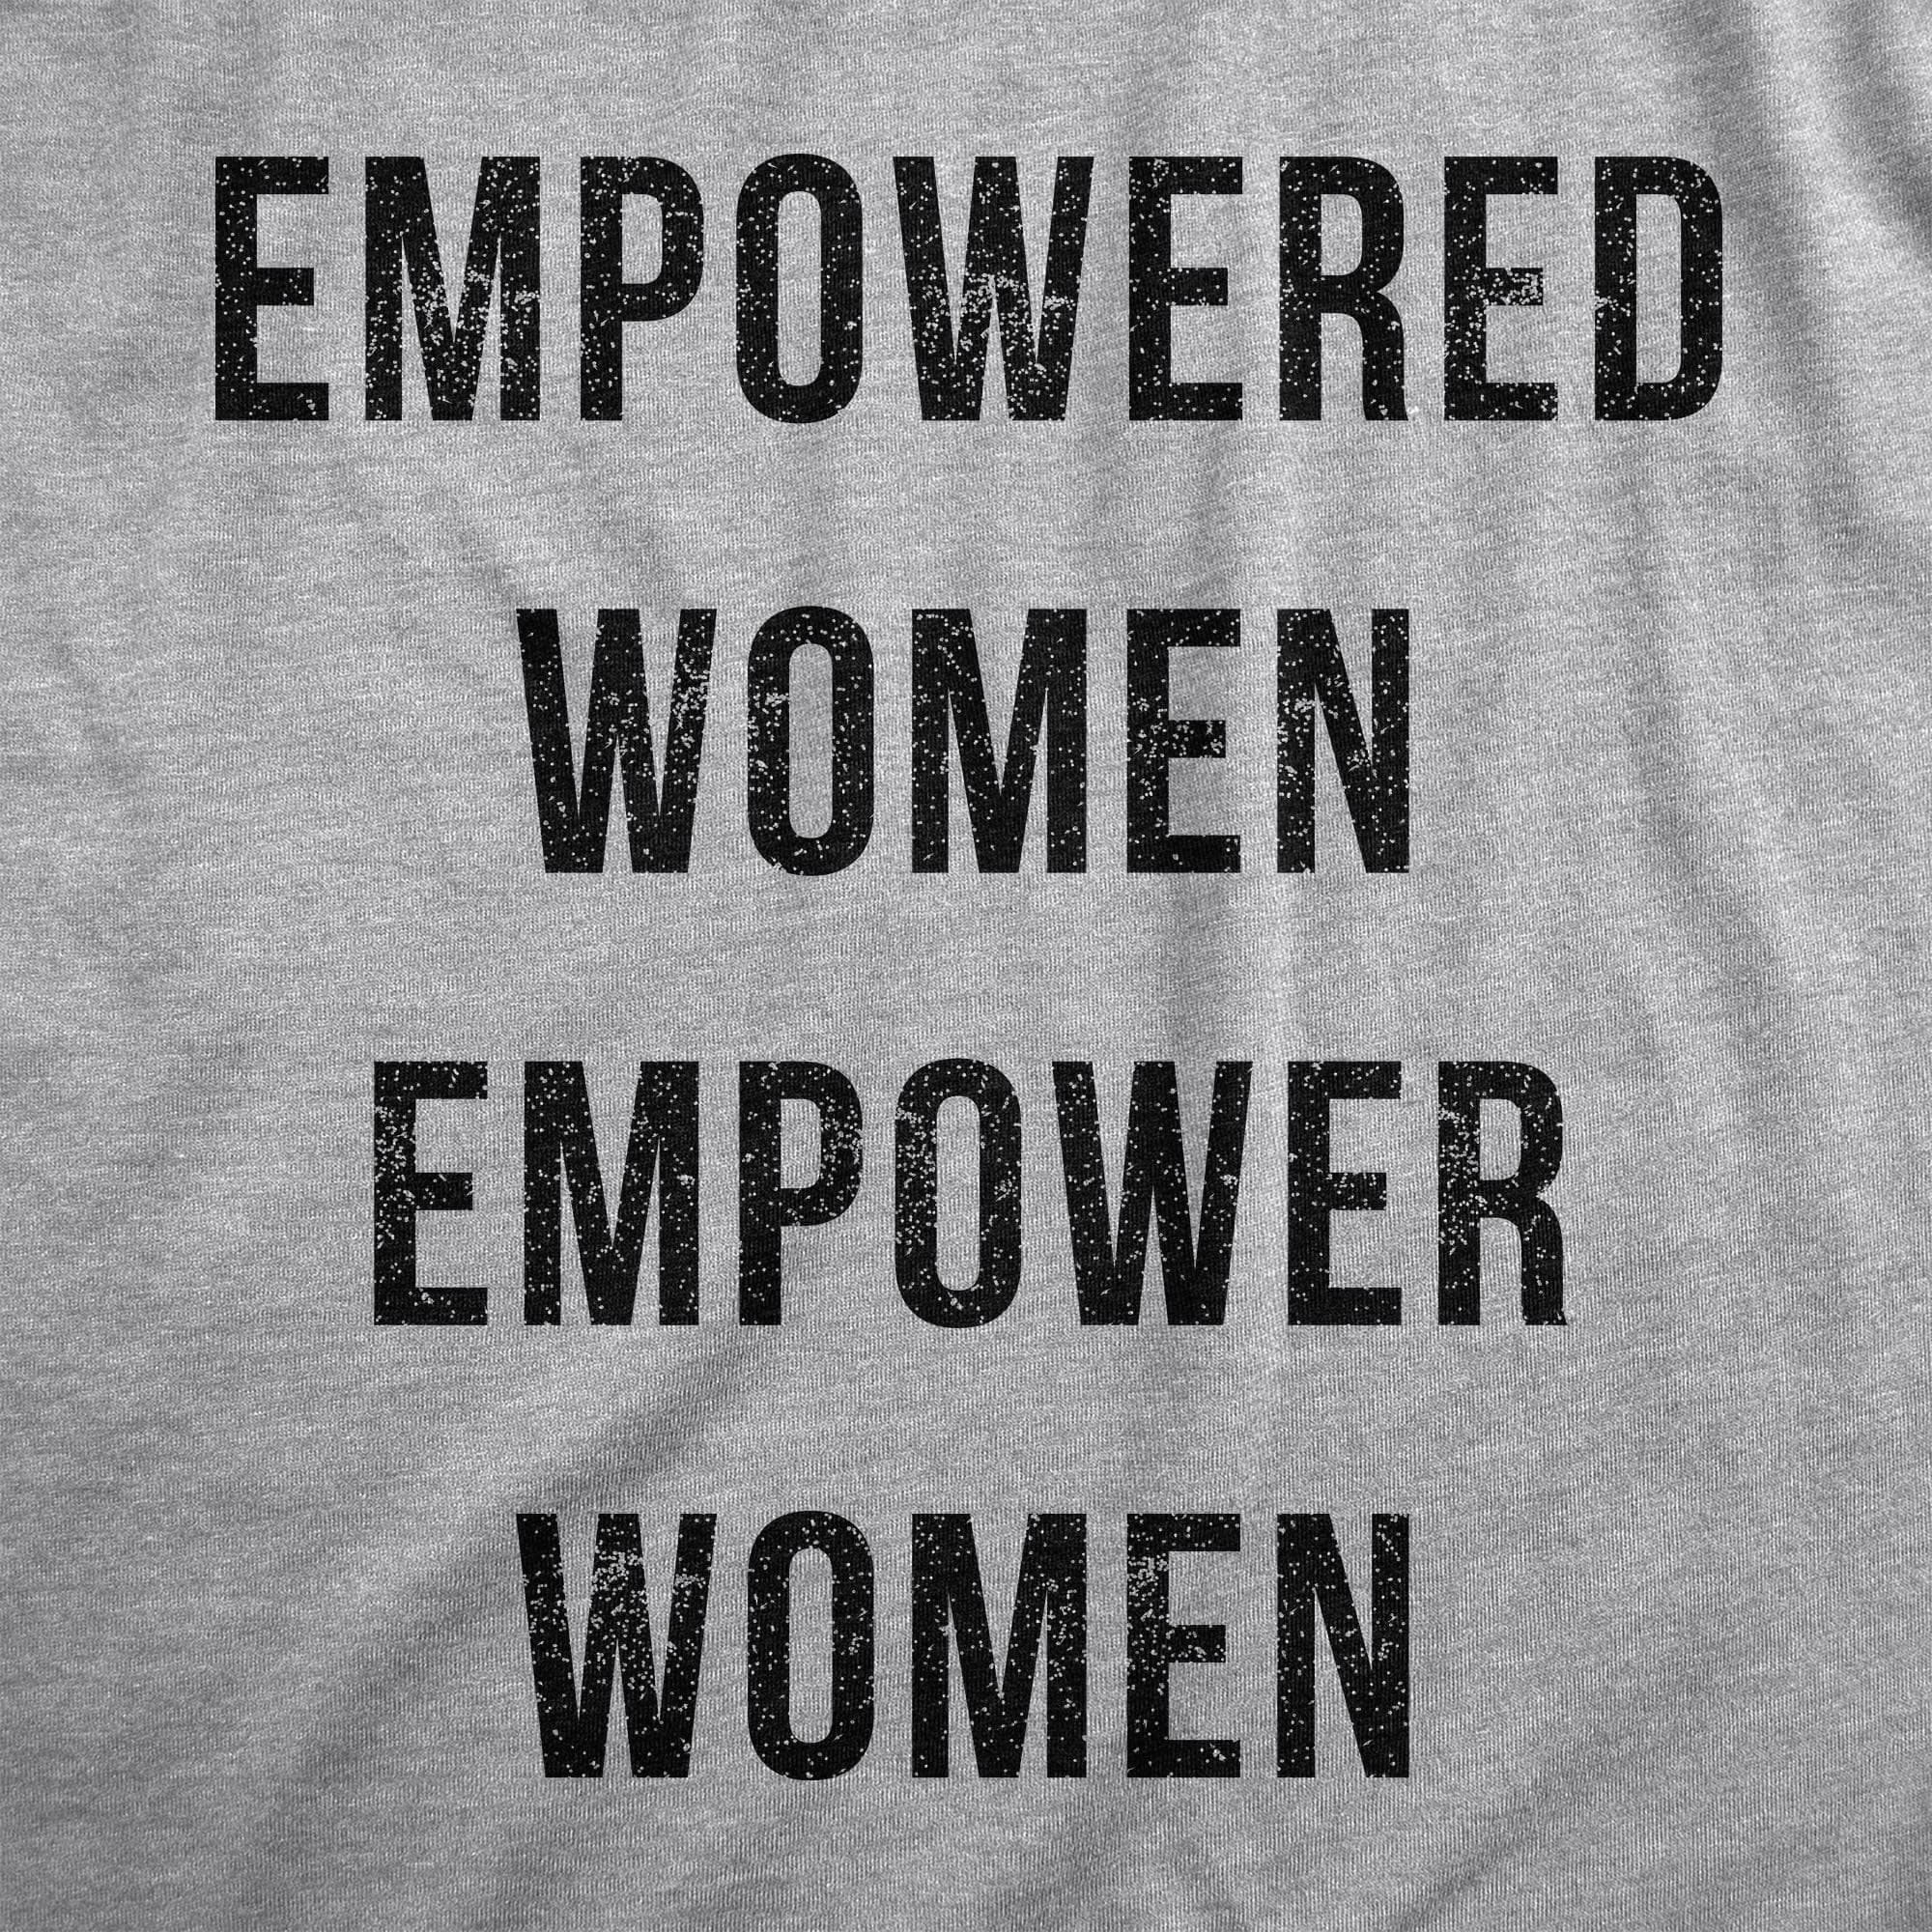 Empowered Women Empower Women  -  Crazy Dog T-Shirts